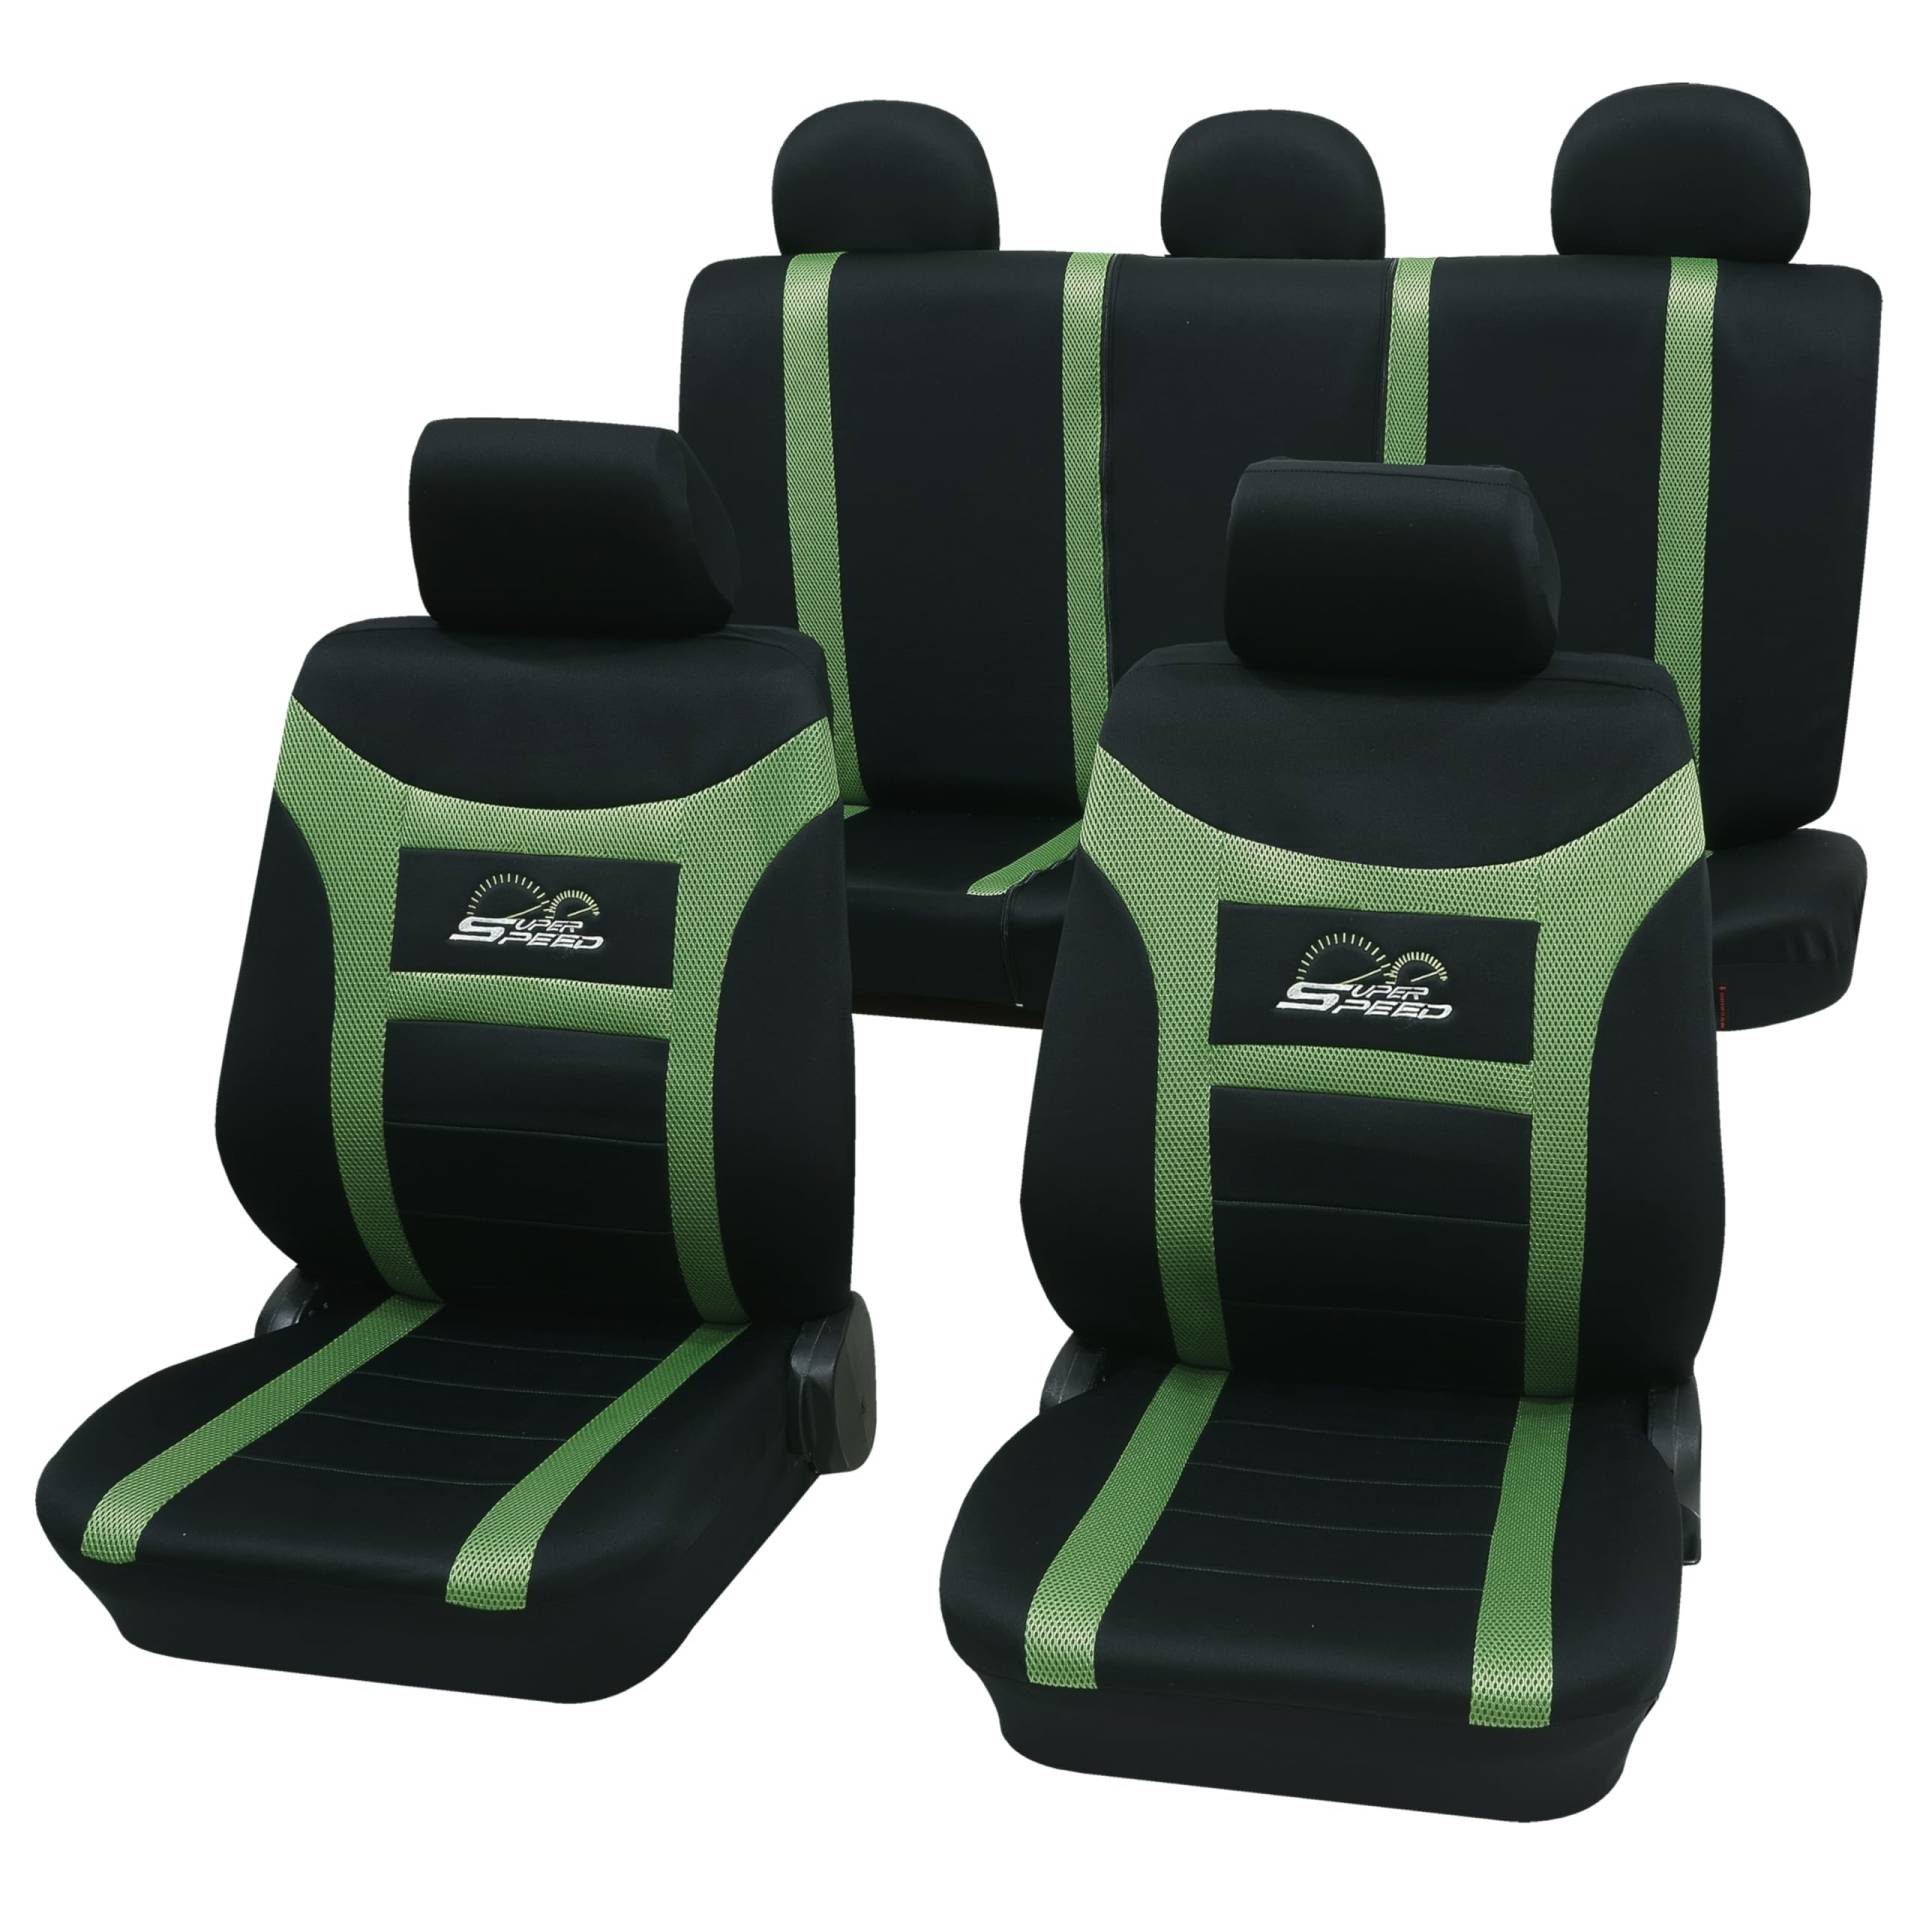 PETEX Auto Sitzbezüge Universal Komplett Set 11-teilig - Super-Speed grün, Eco Class mit SAB 1 Vario von PETEX